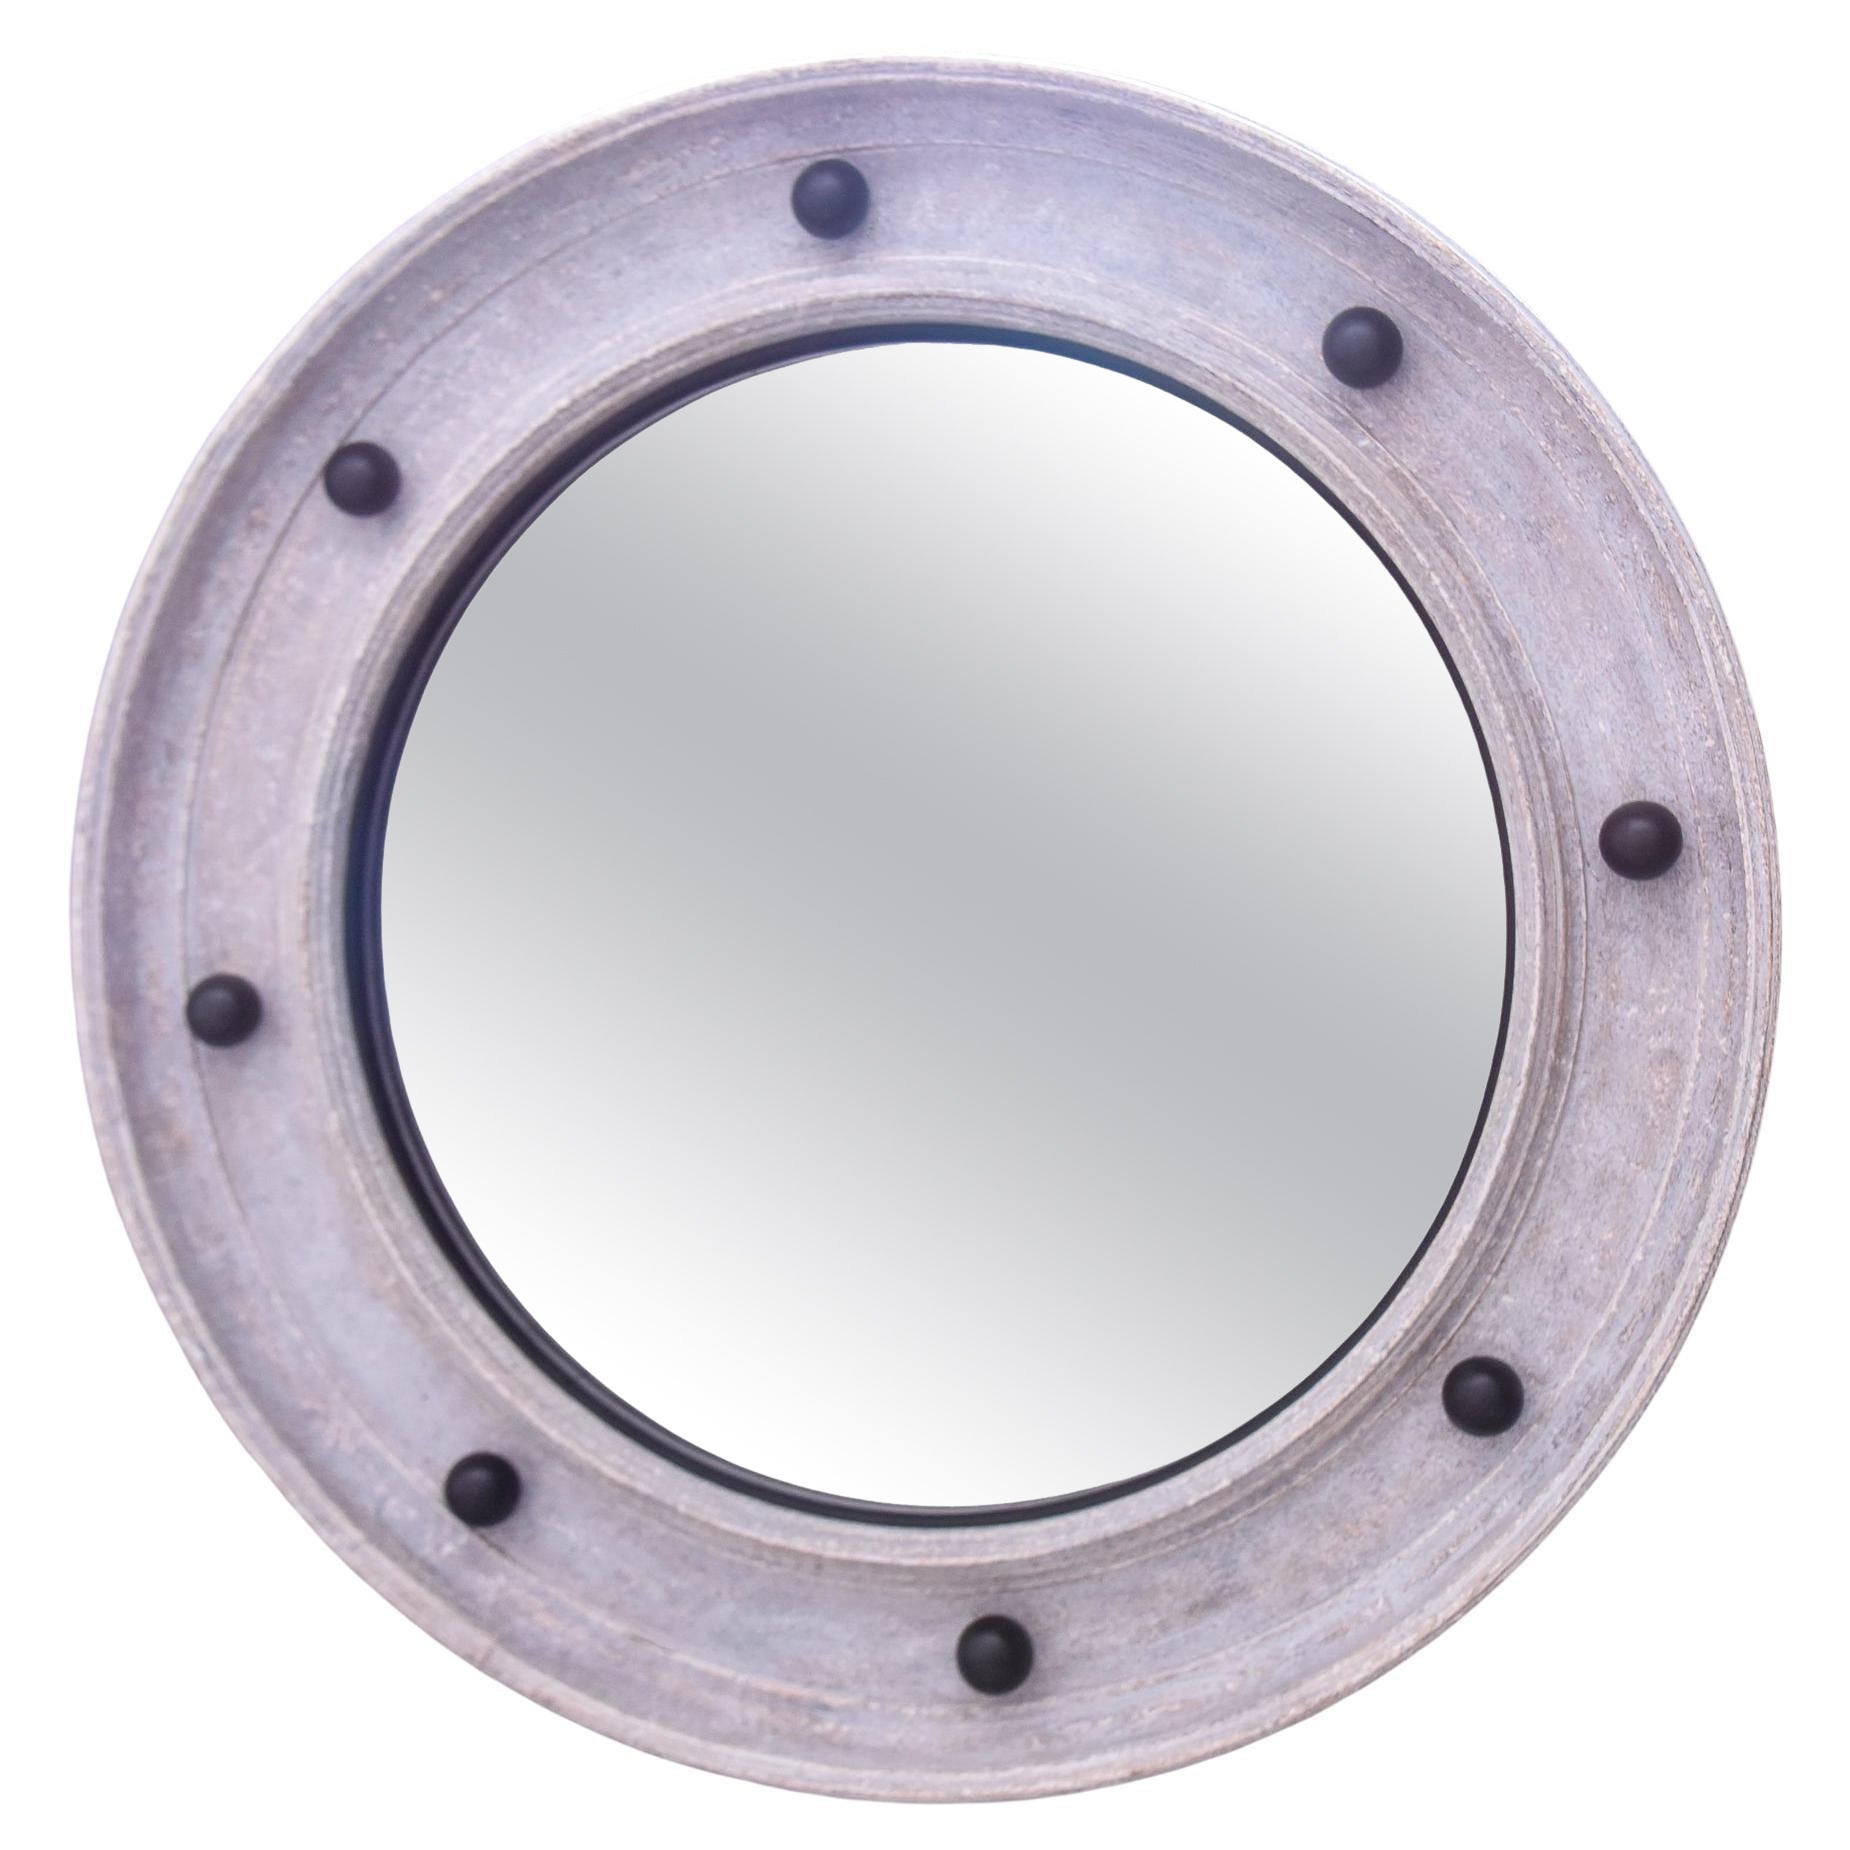  Runder Spiegel im schwedischen Stil mit grauer Farbe und schwarzen Kugeln